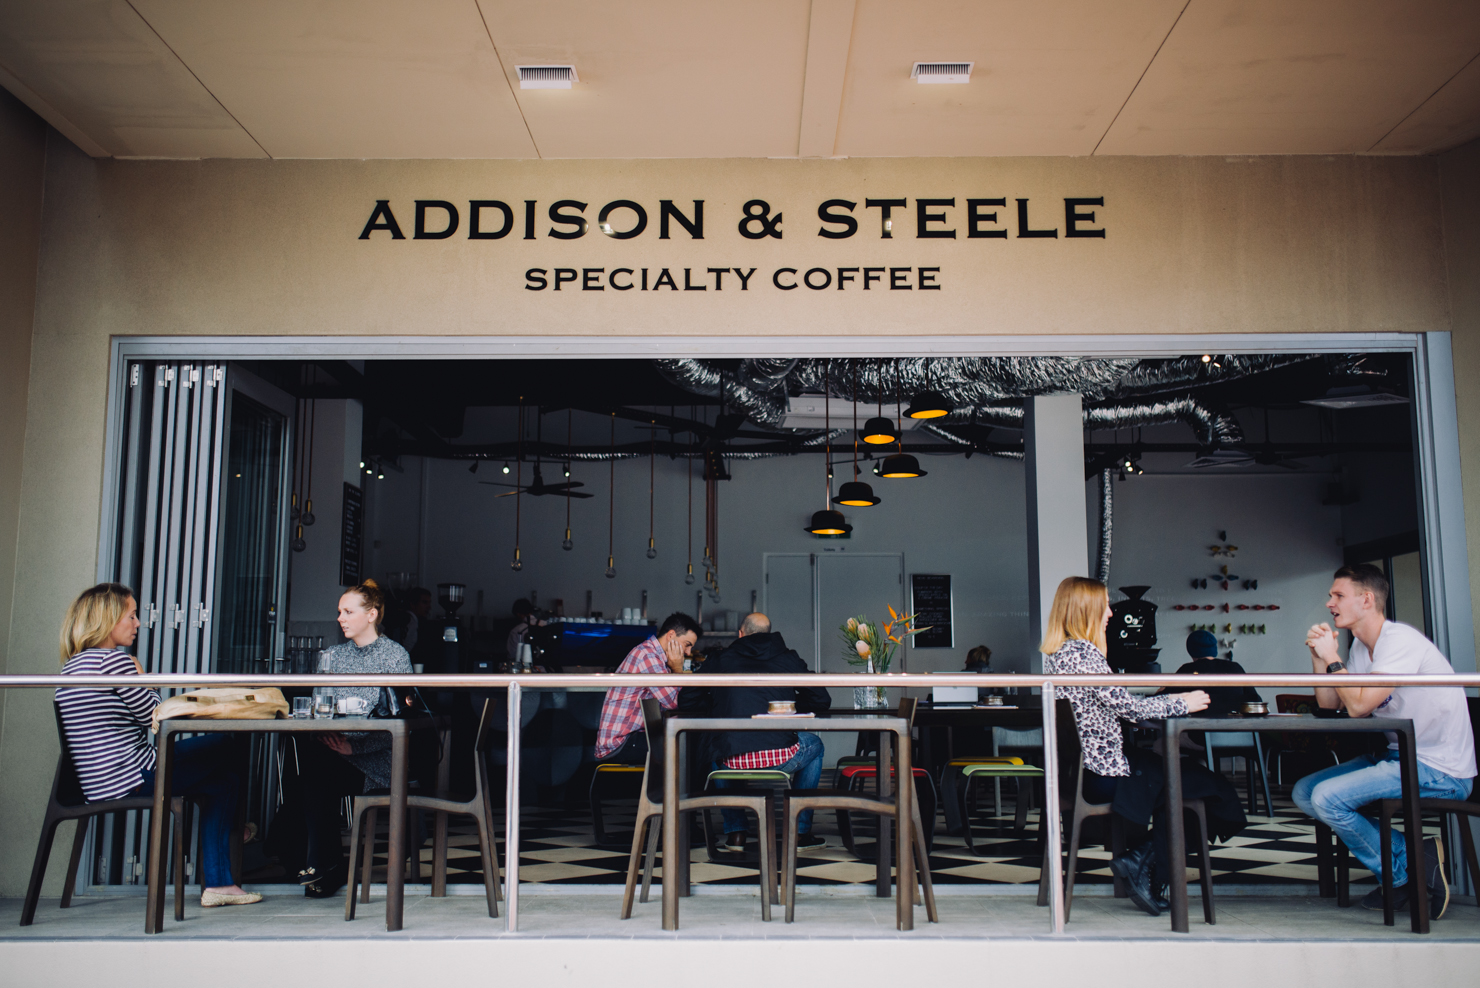 Addison & Steele in Perth, Australia